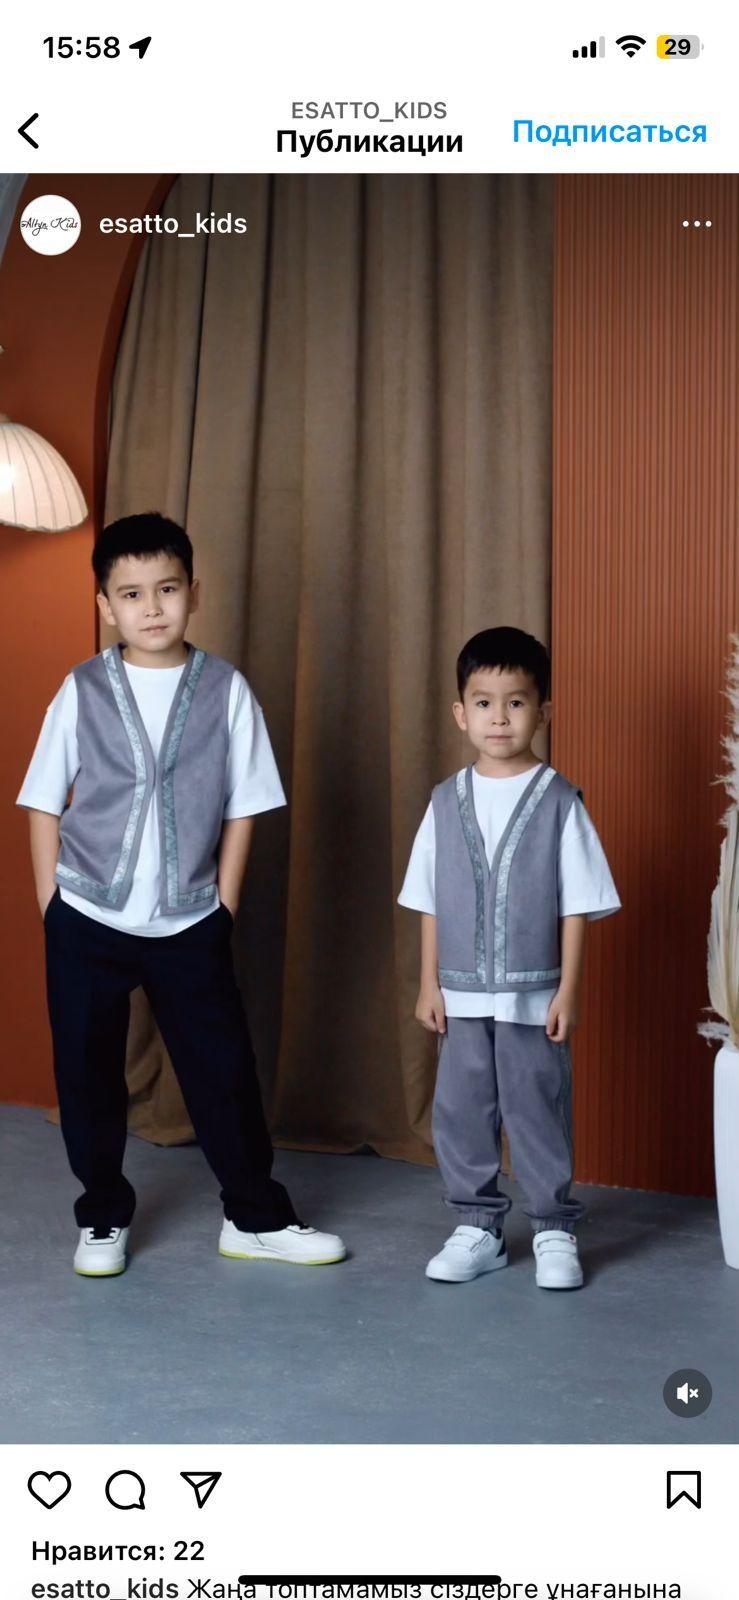 Детские казахские национальные костюмы камзол жилеты